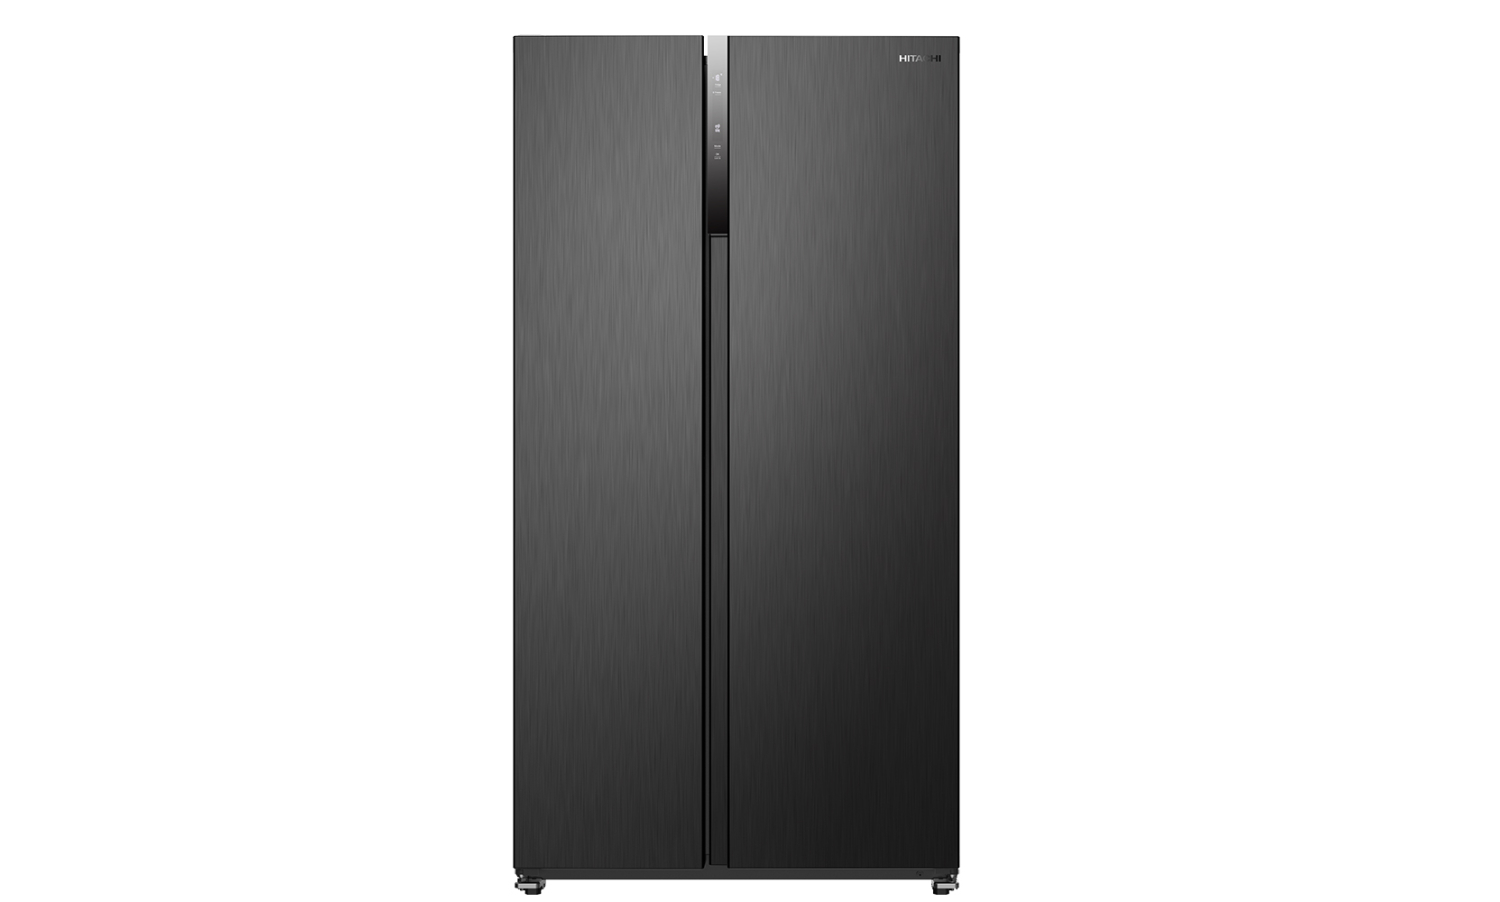 Tủ Lạnh Hitachi Side by Side Mới Nhất: Làm Lạnh Vòng Cung, Inverter, Cấp Đông Nhanh